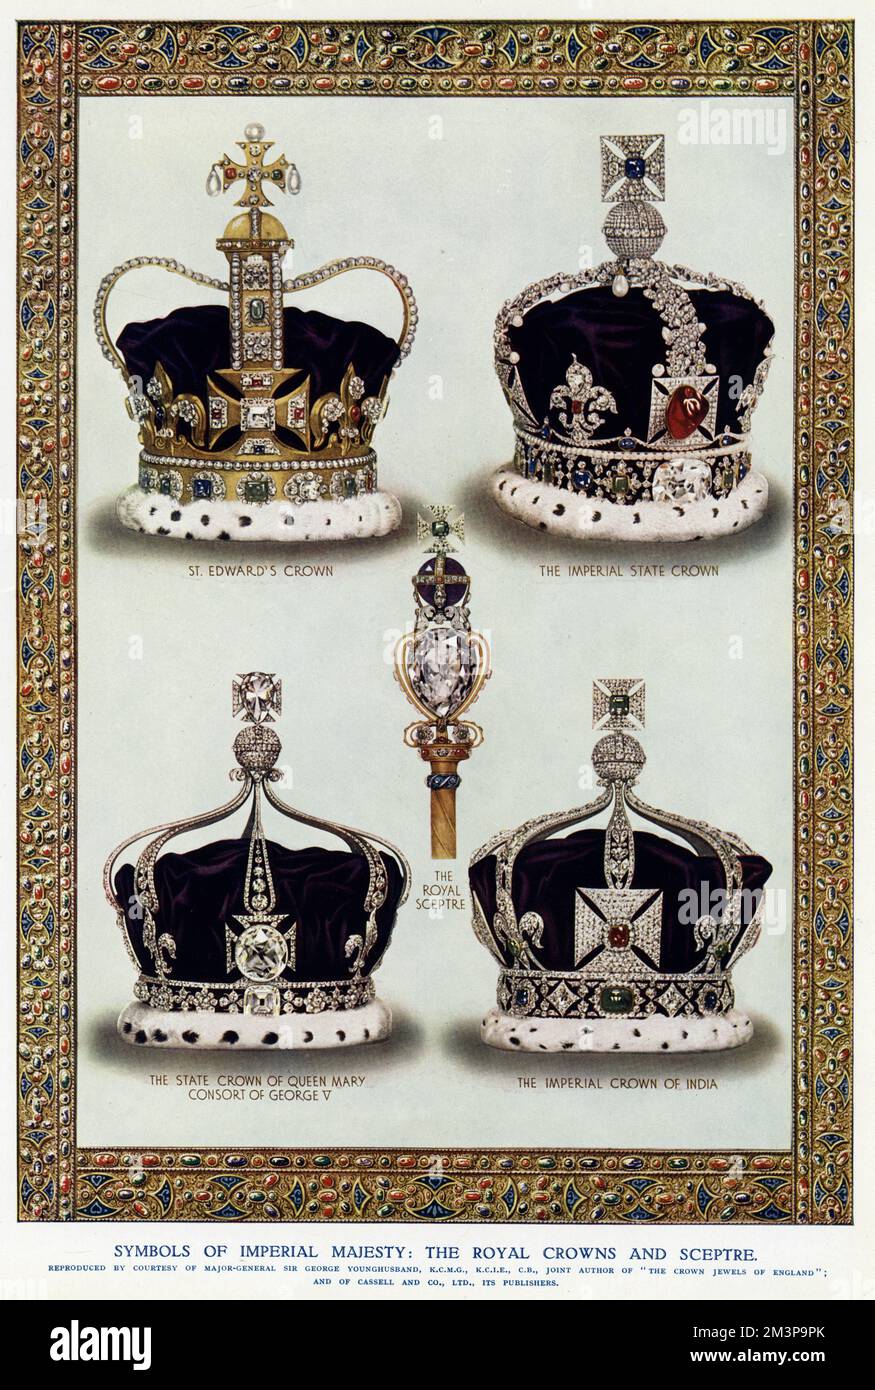 Simboli della maestà imperiale: La corona di Sant'Edoardo, con 444 pietre preziose, rimane uno dei gioielli della corona più importanti del Regno Unito, essendo la corona ufficiale dell'incoronazione. La Corona Imperiale di Stato, simboleggia la sovranità del monarca, ci sono state diverse versioni dal 15th ° secolo, simile a quella della Corona di San Edoardo, ma più breve e incrostata di gioielli, gemme preziose, diamanti, perle, zaffiri, smeraldi e rubini. Corona di Stato della regina Maria Consorte di re Giorgio V d'Inghilterra. La corona imperiale dell'India, fu la corona di tre sovrani britannici come imperatori dell'India durante la t Foto Stock